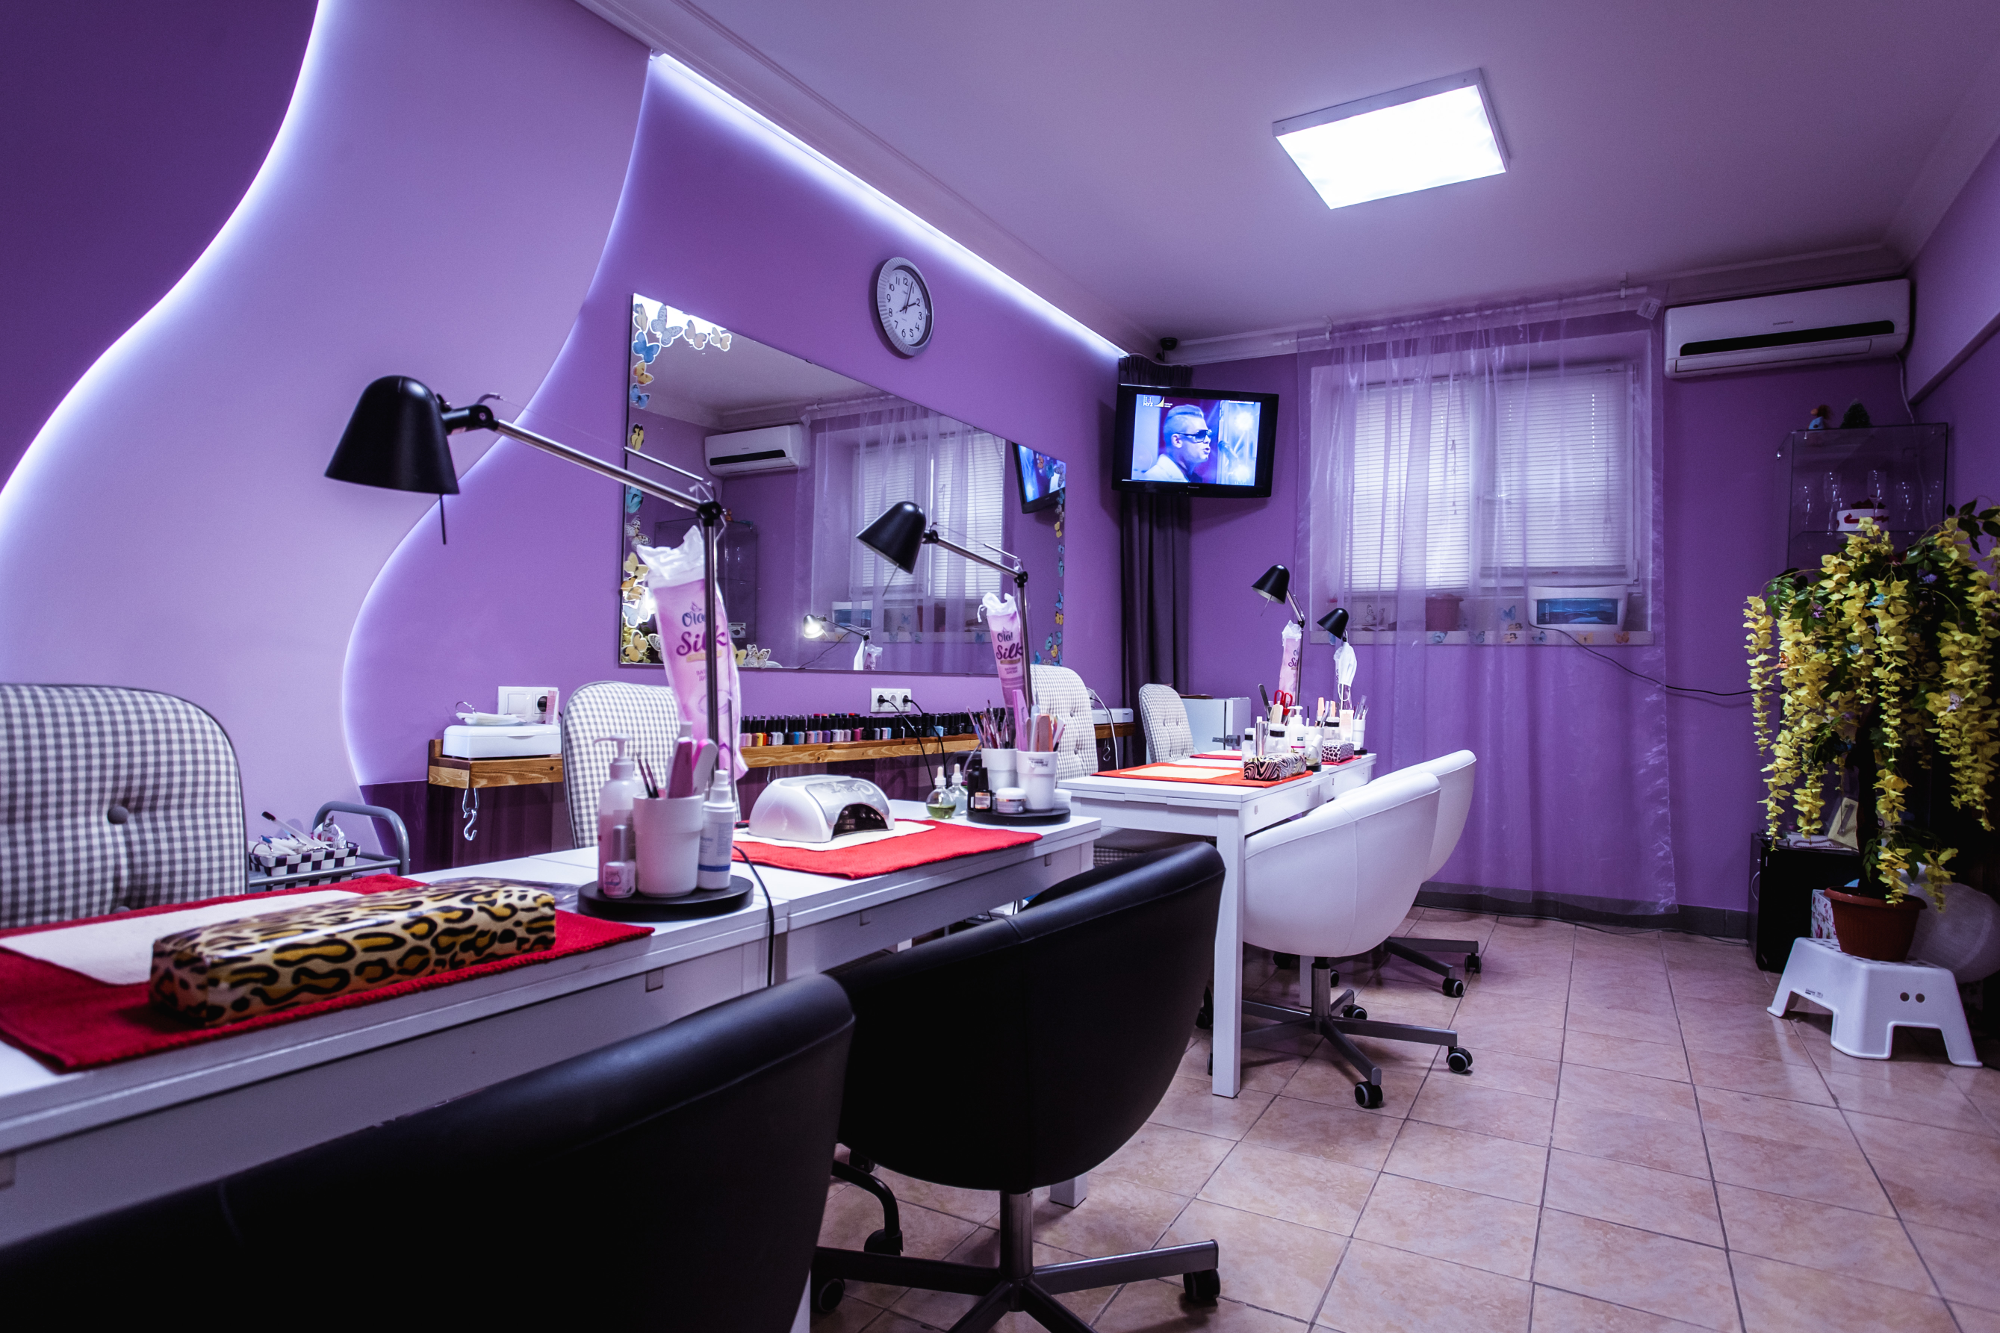 Маникюрный. Красивый маникюрный салон. Парикмахерская в сиреневом стиле. Интерьер парикмахерской в фиолетовых тонах. Парикмахерская в фиолетовом цвете.